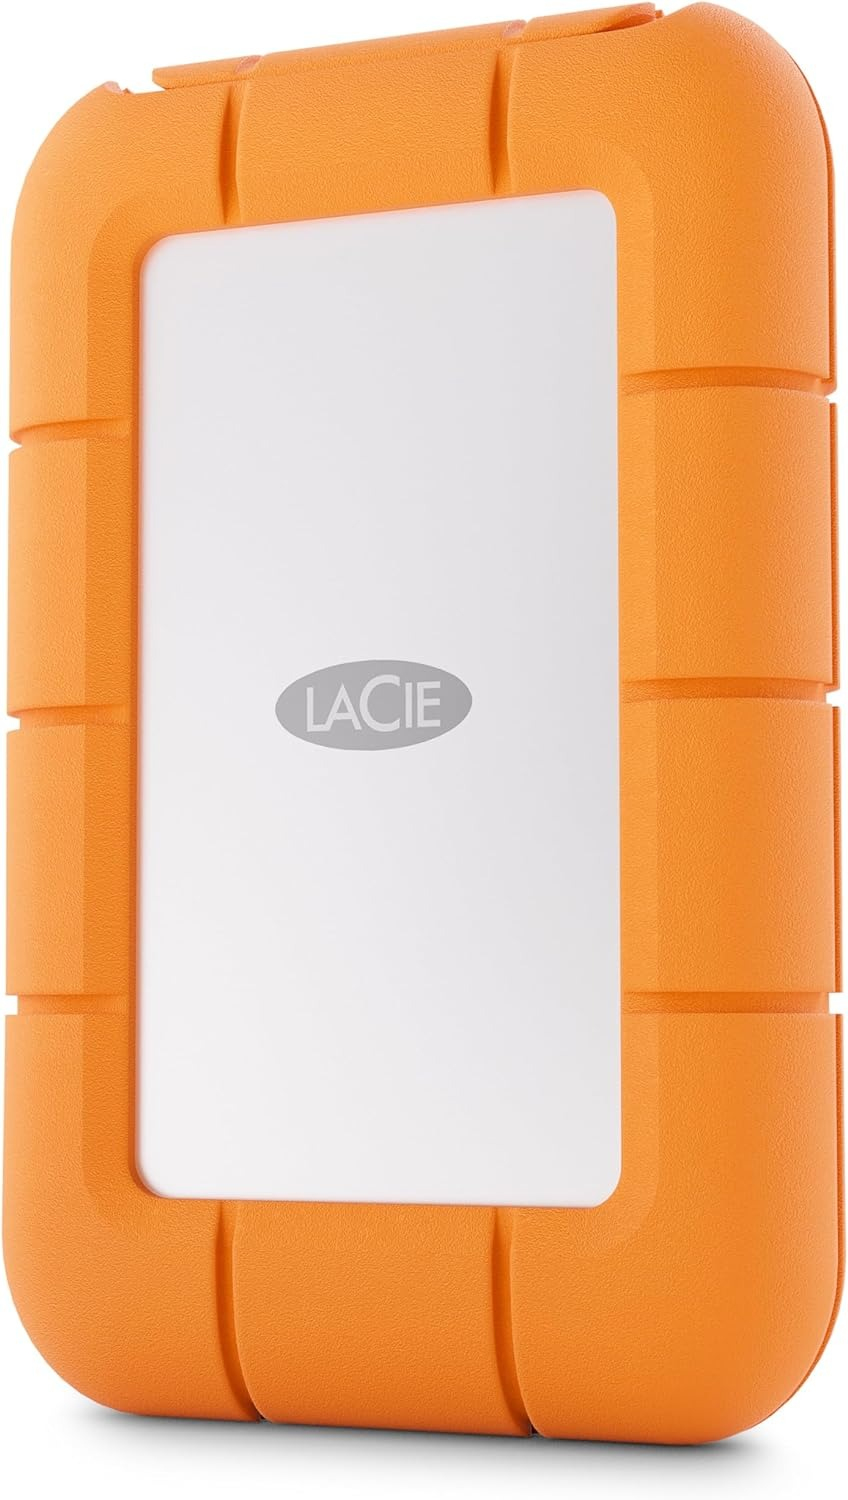 LaCie STMF2000400 lecteur à circuits intégrés externe 2 To Gris, Orange